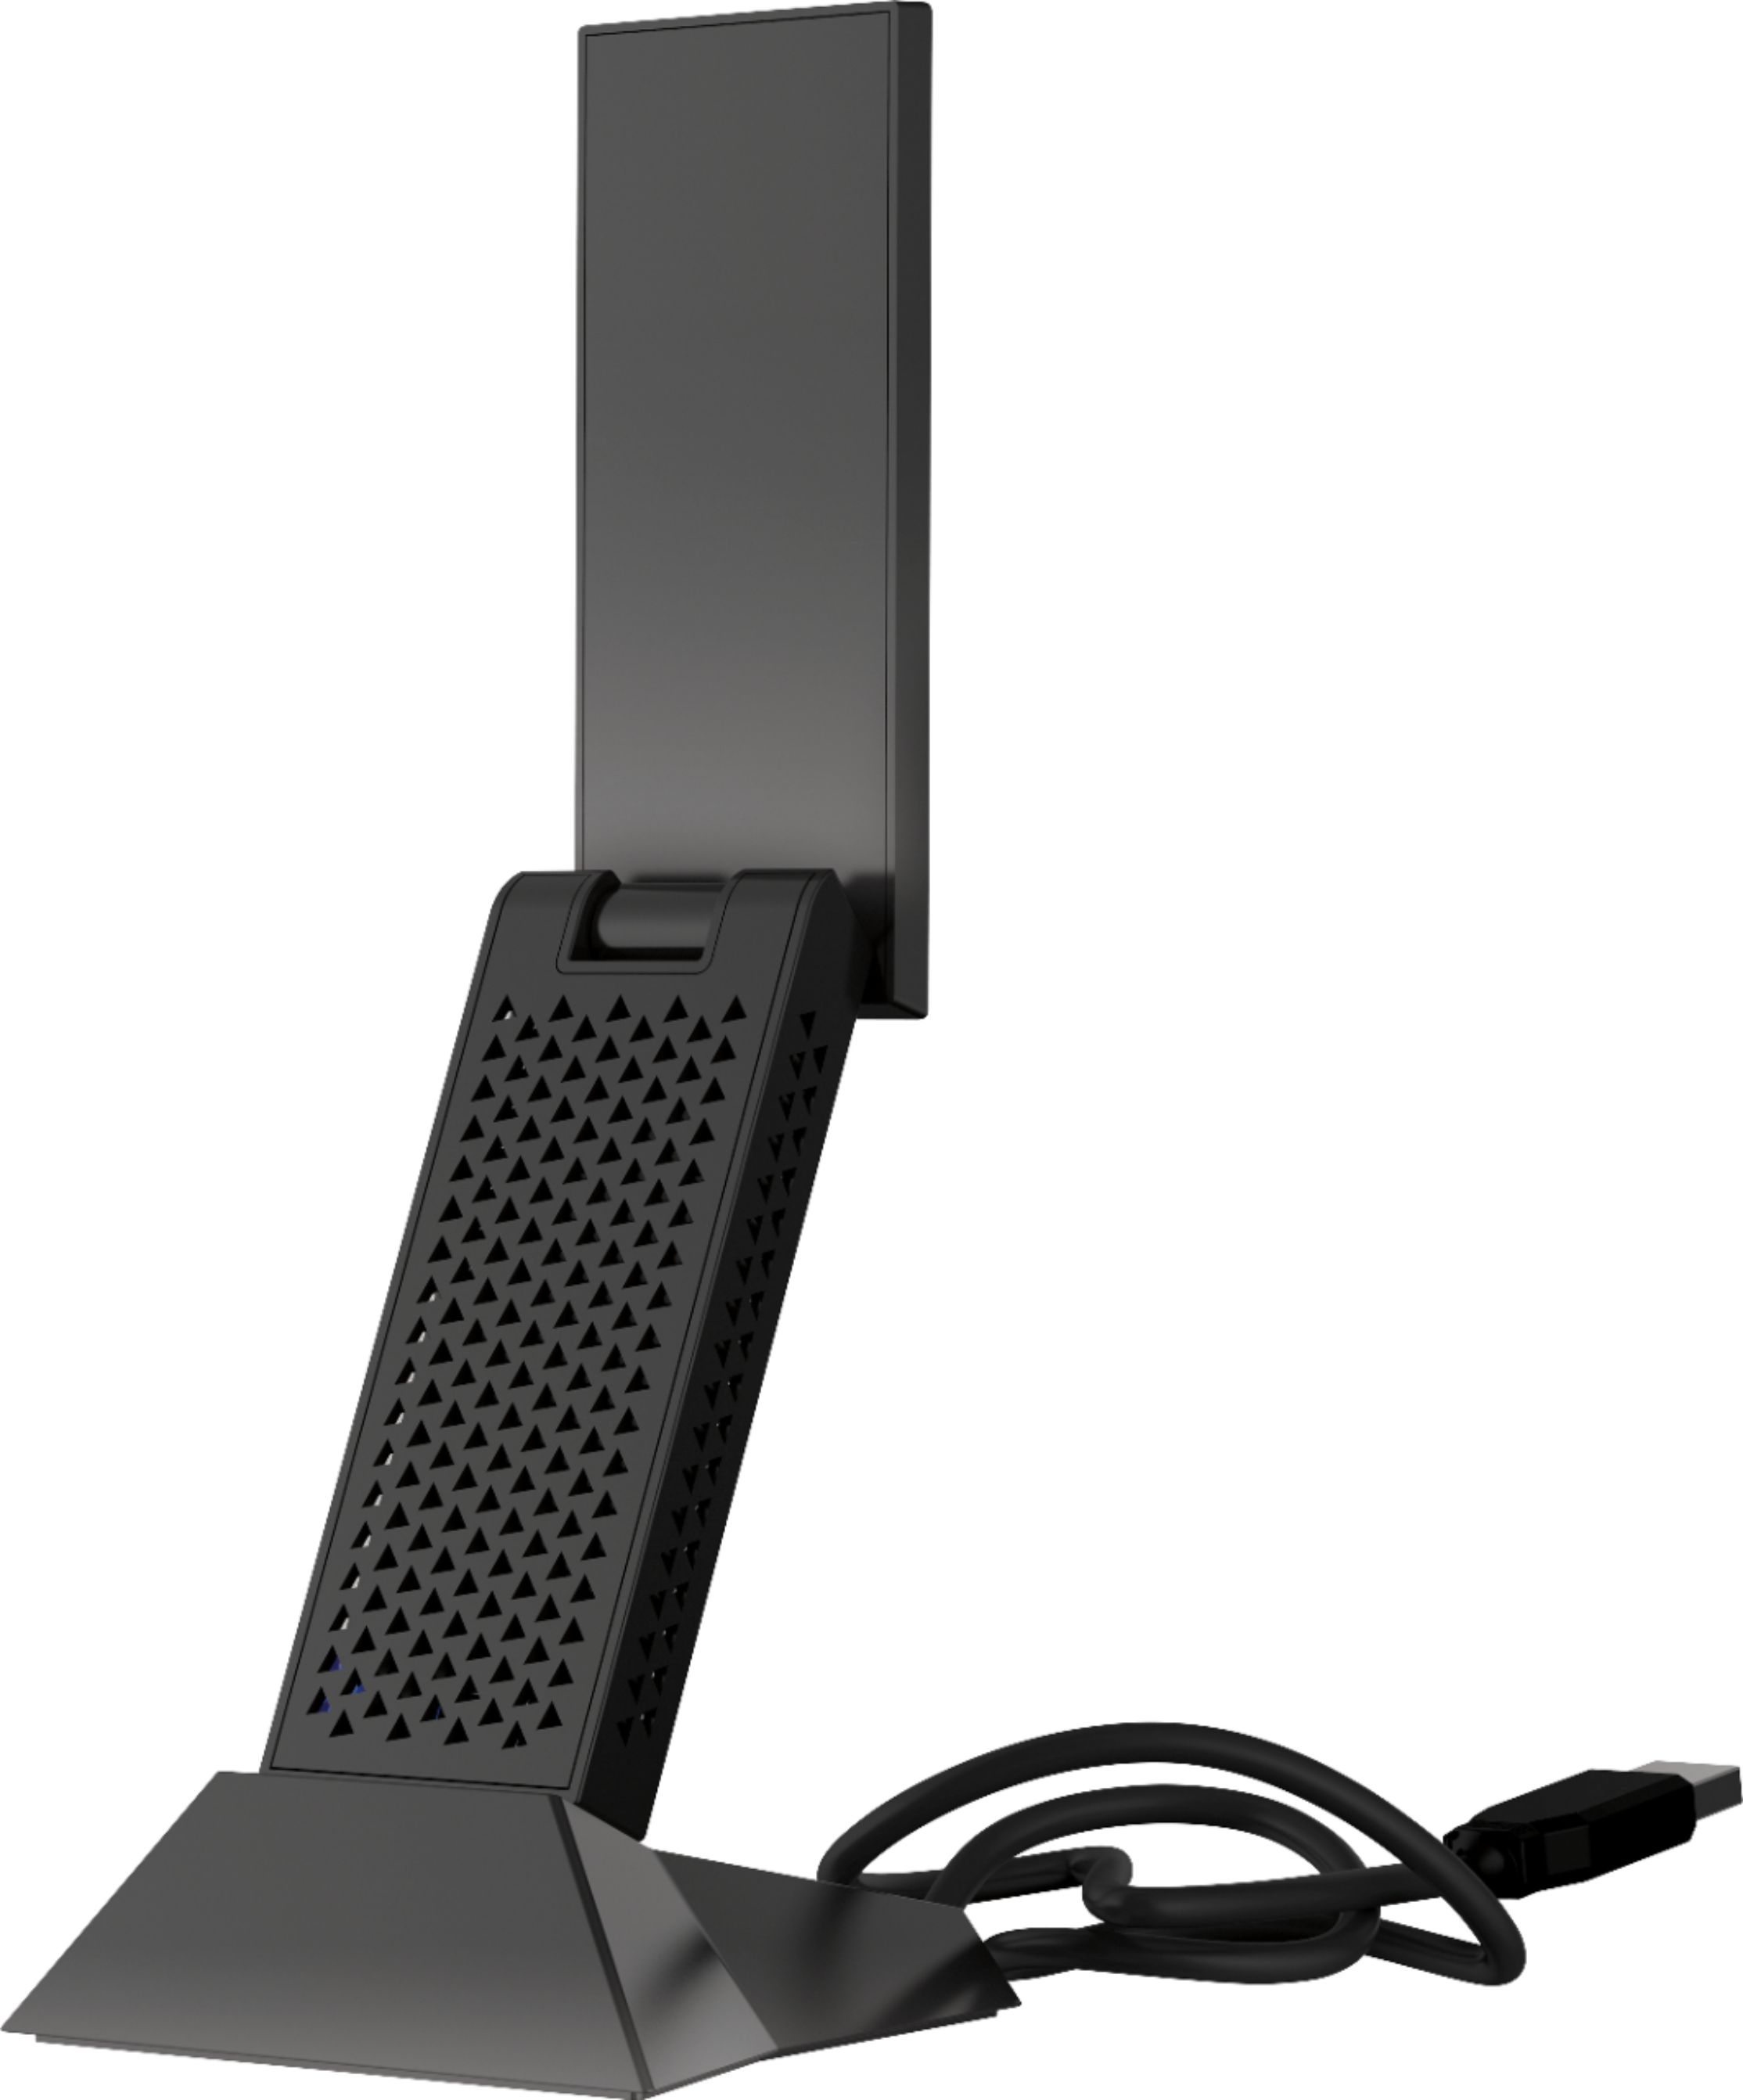 Nighthawk AC1900 Dual-Band WiFi USB 3.0 Adapter Black NETGEAR 